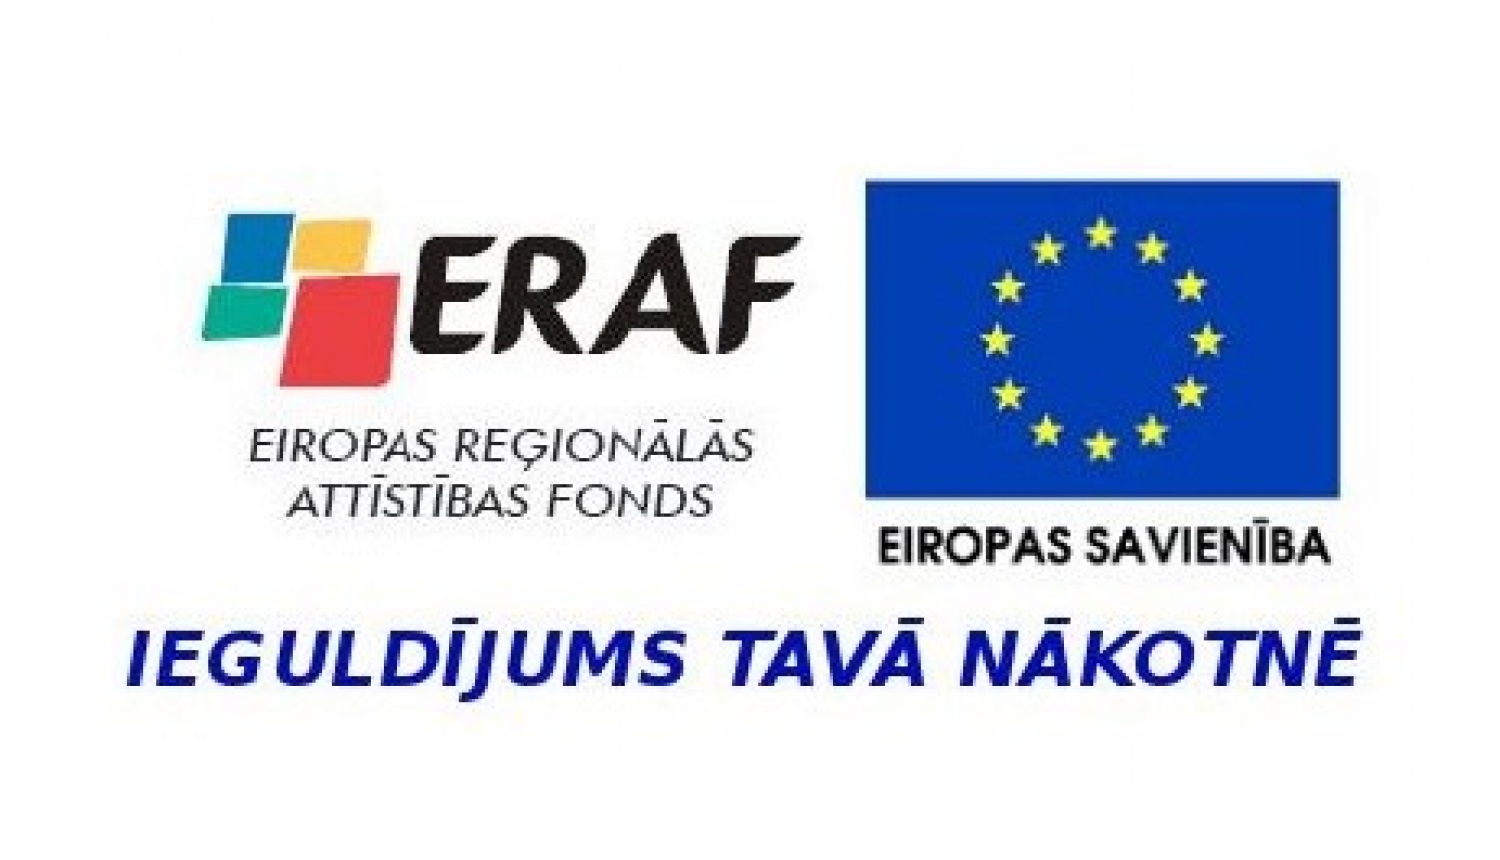 Eiropas Reģionālās attīstības fonda un Eiropas Savienības logo